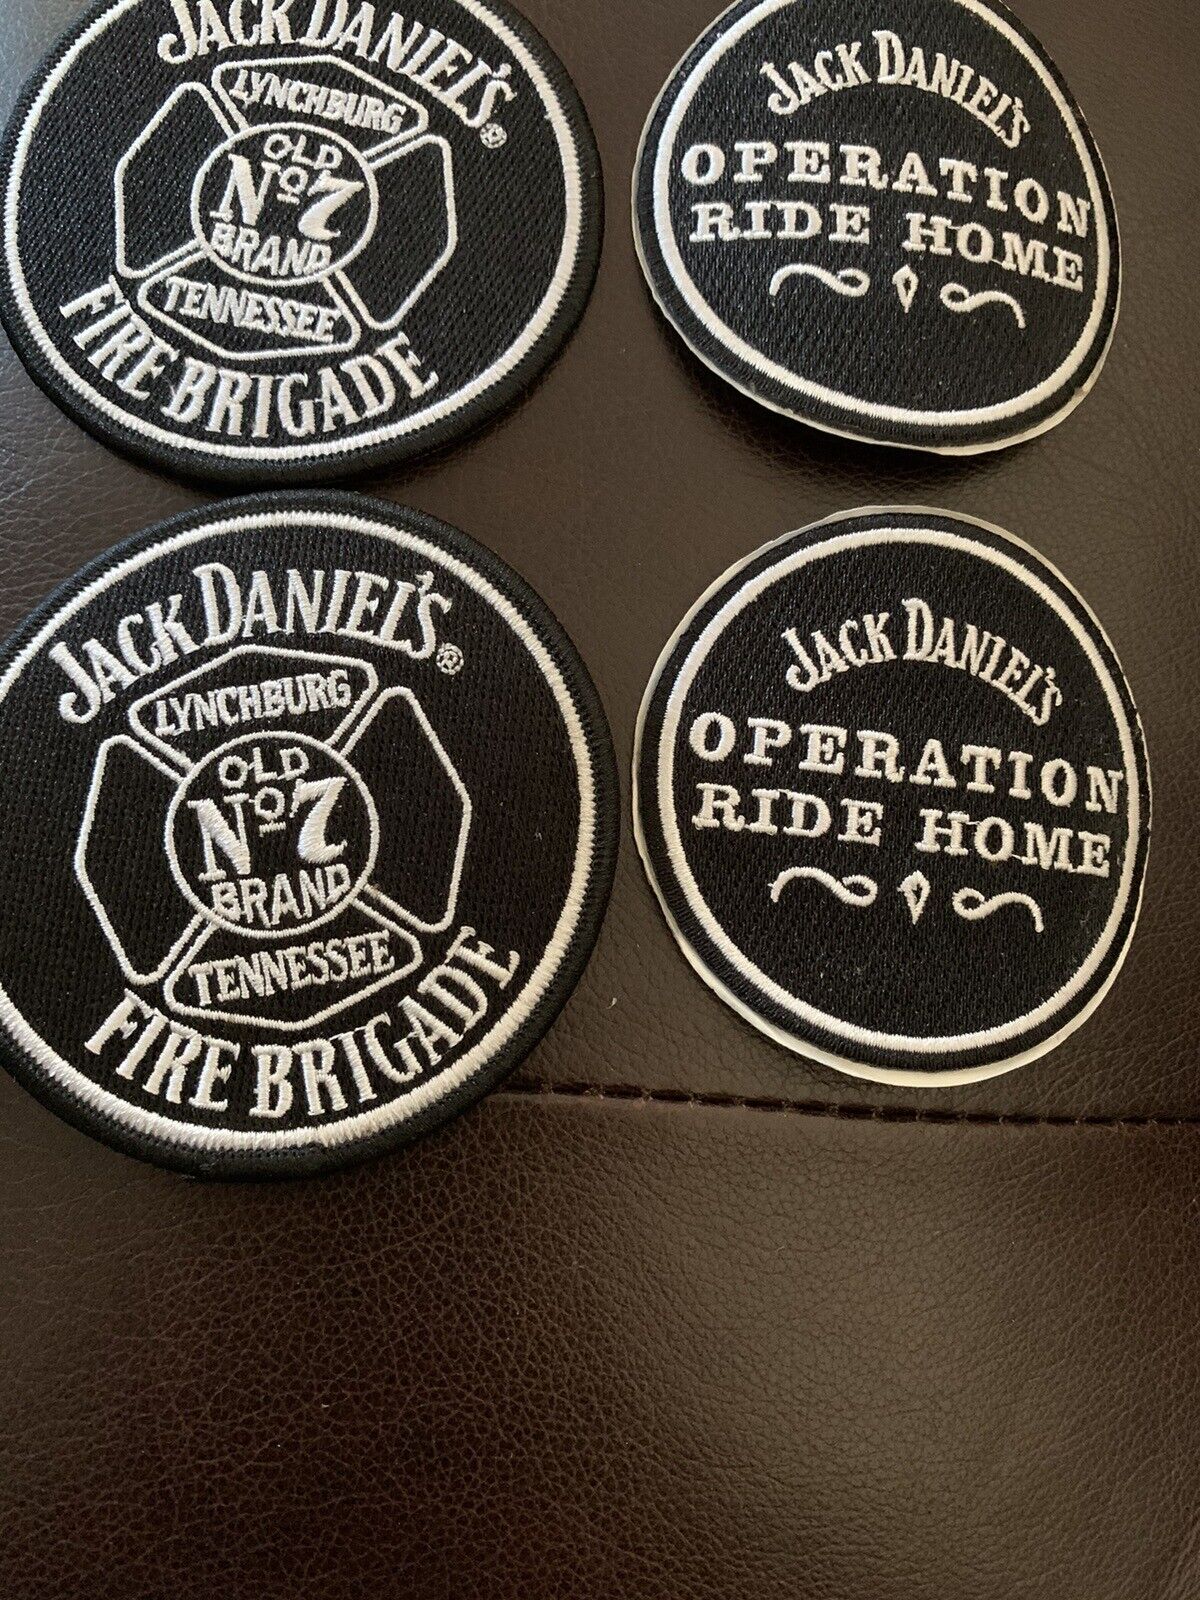 Jack Daniels Fire Brigade Old No 7 Brand 3.5